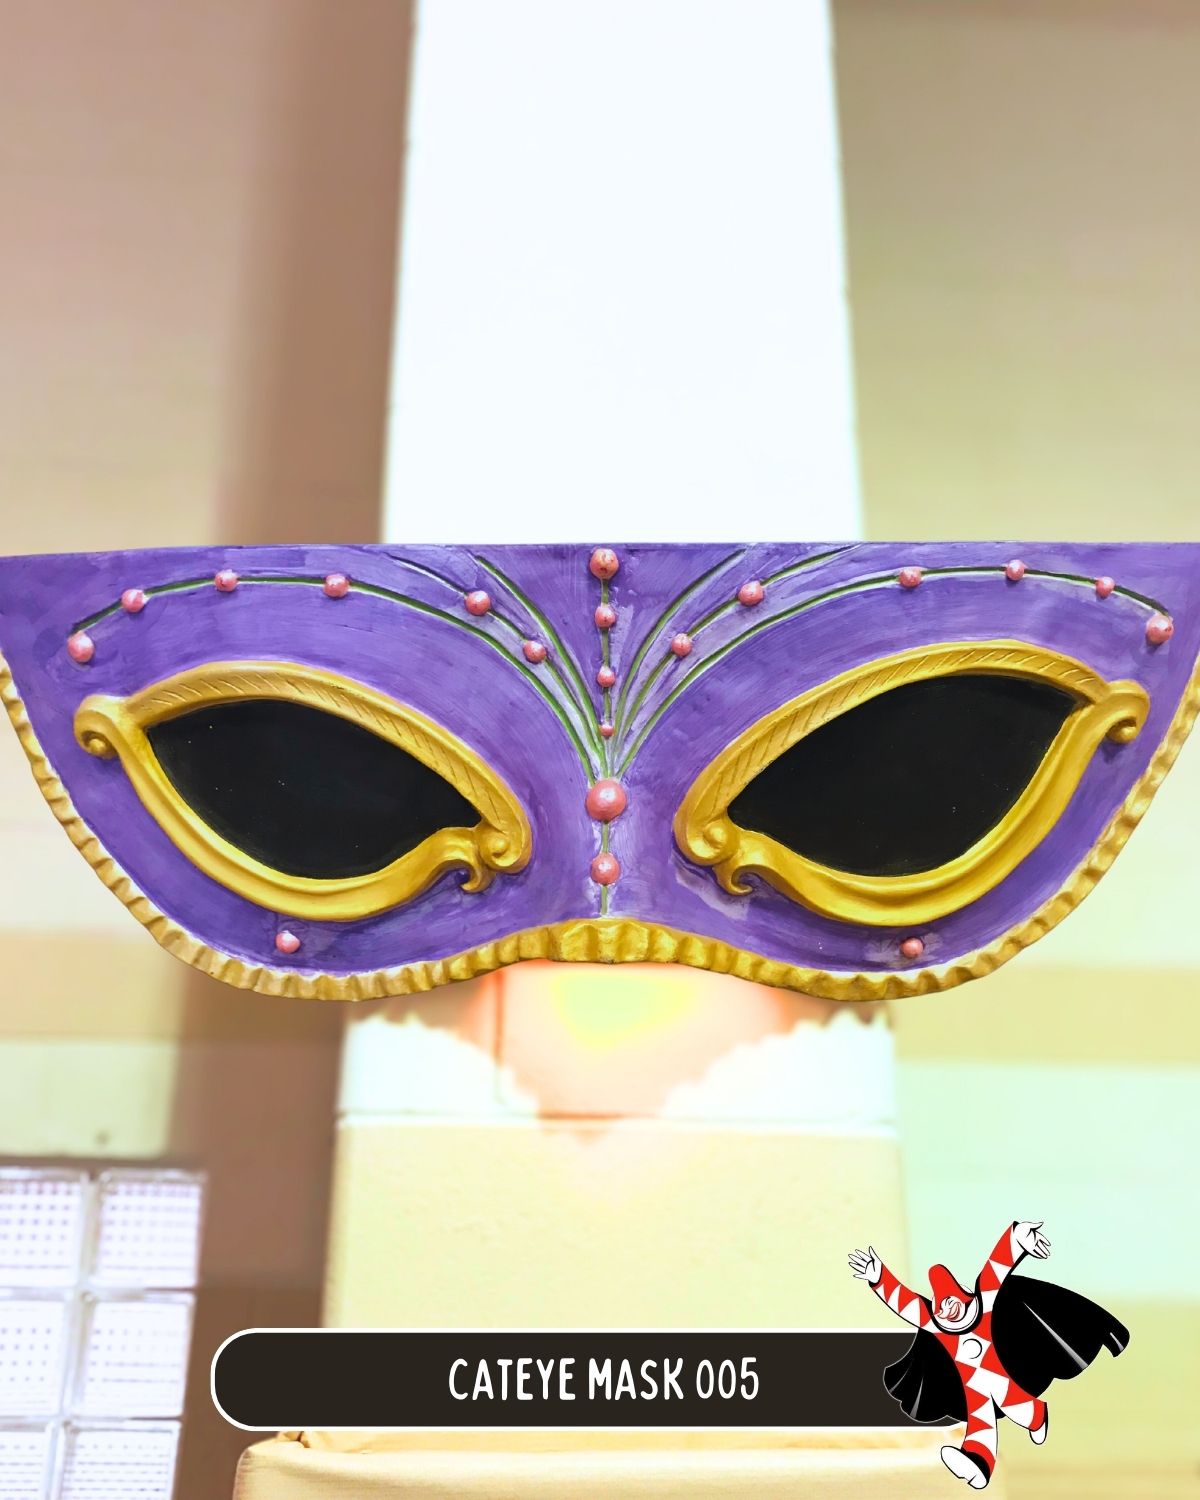 Cateye Mask 005